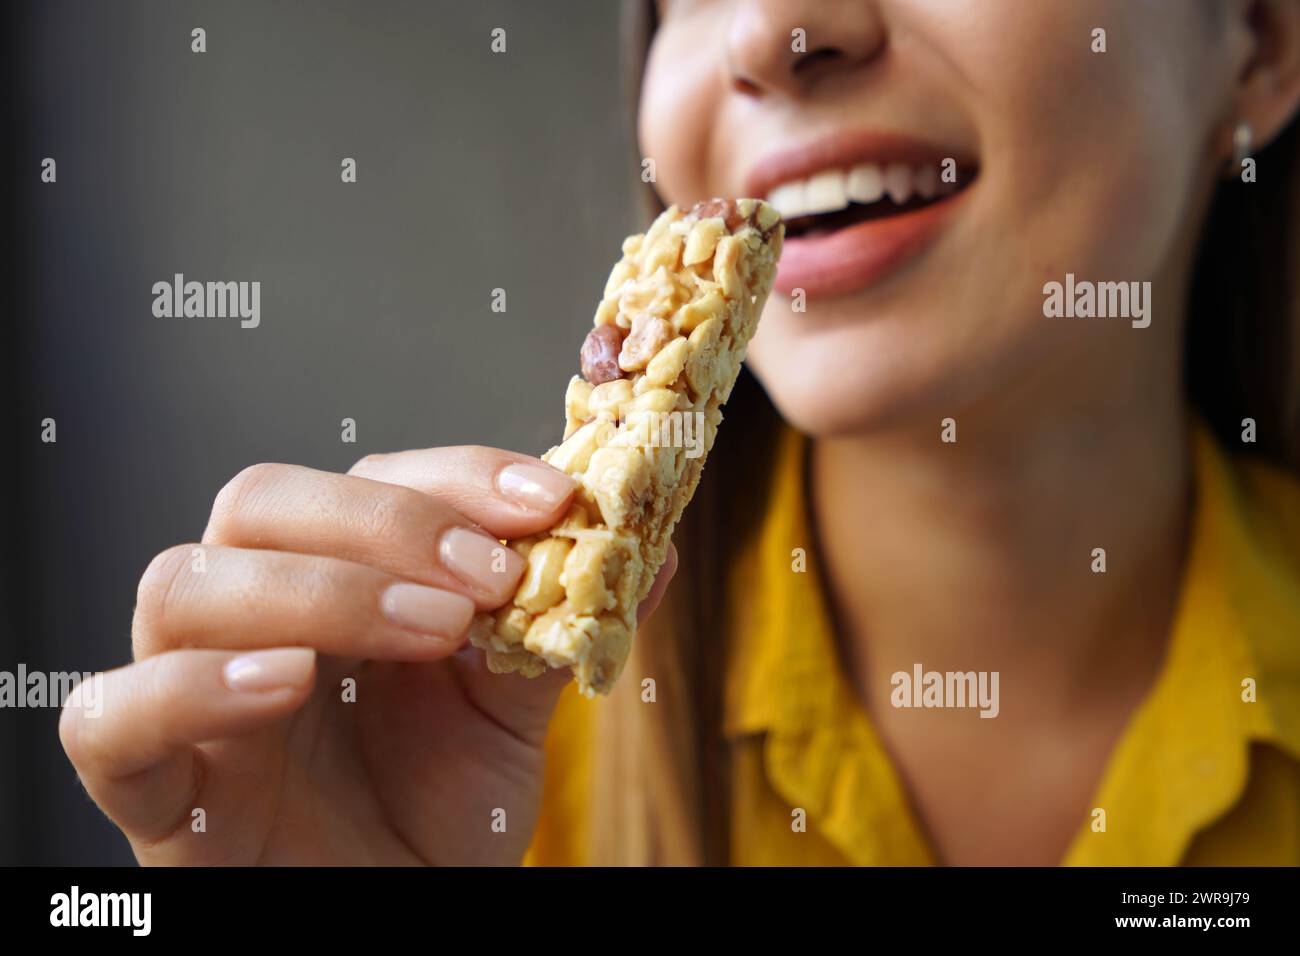 Giovane donna che mangia una barretta di cereali senza zucchero su sfondo grigio Foto Stock